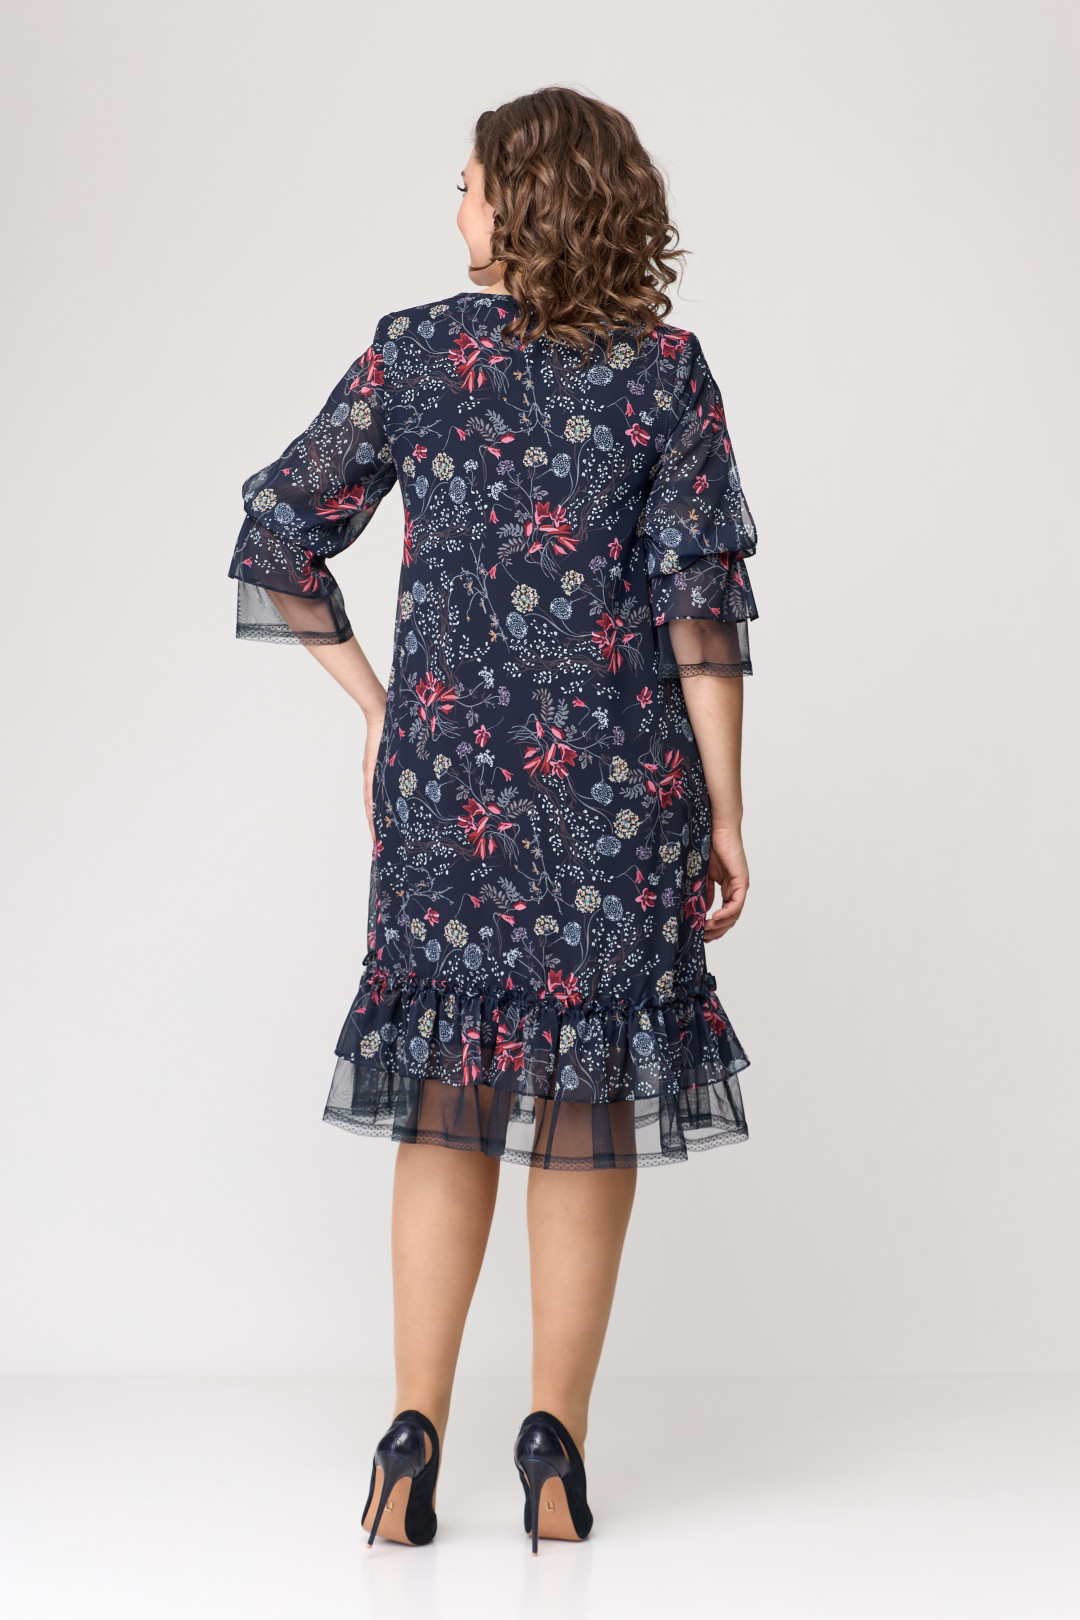 Платье Мода-Версаль 2205 индиго